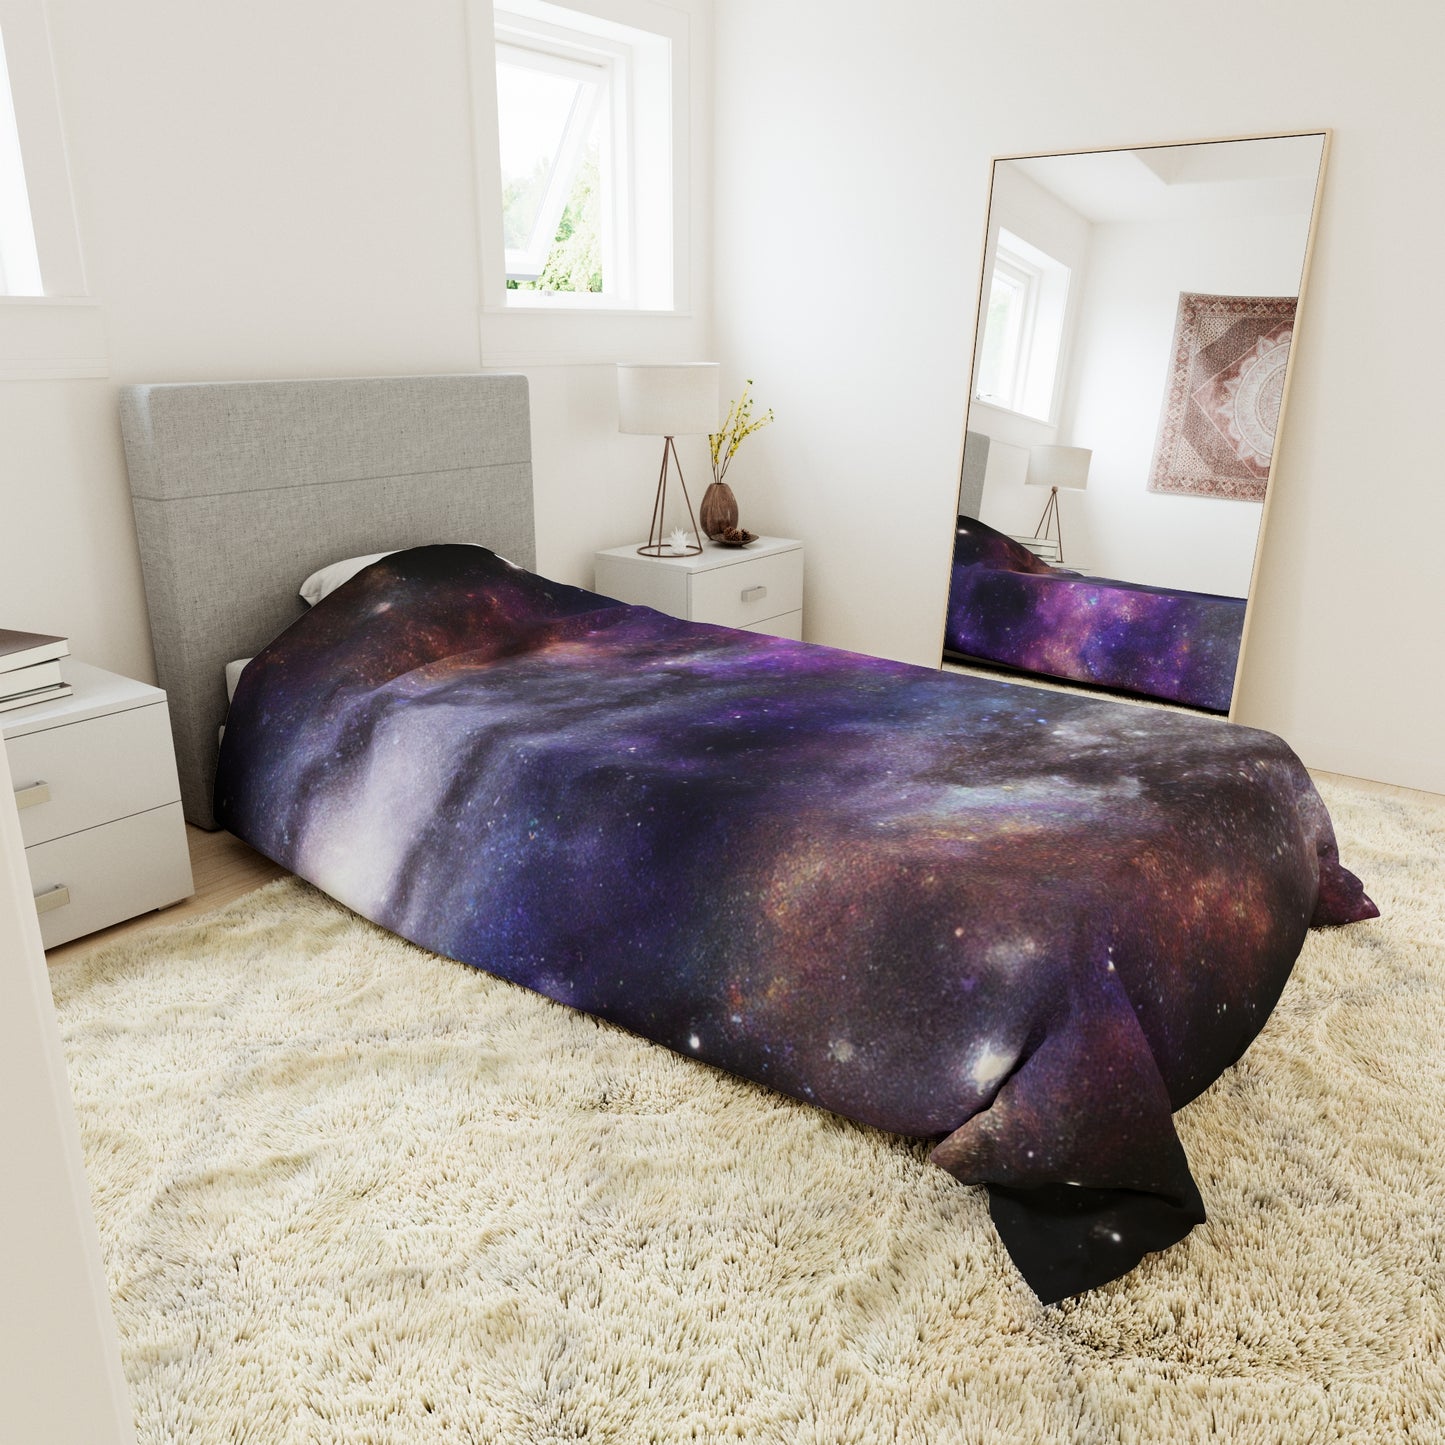 .

Sparkles the Star Dreamer - Astronomy Duvet Bed Cover